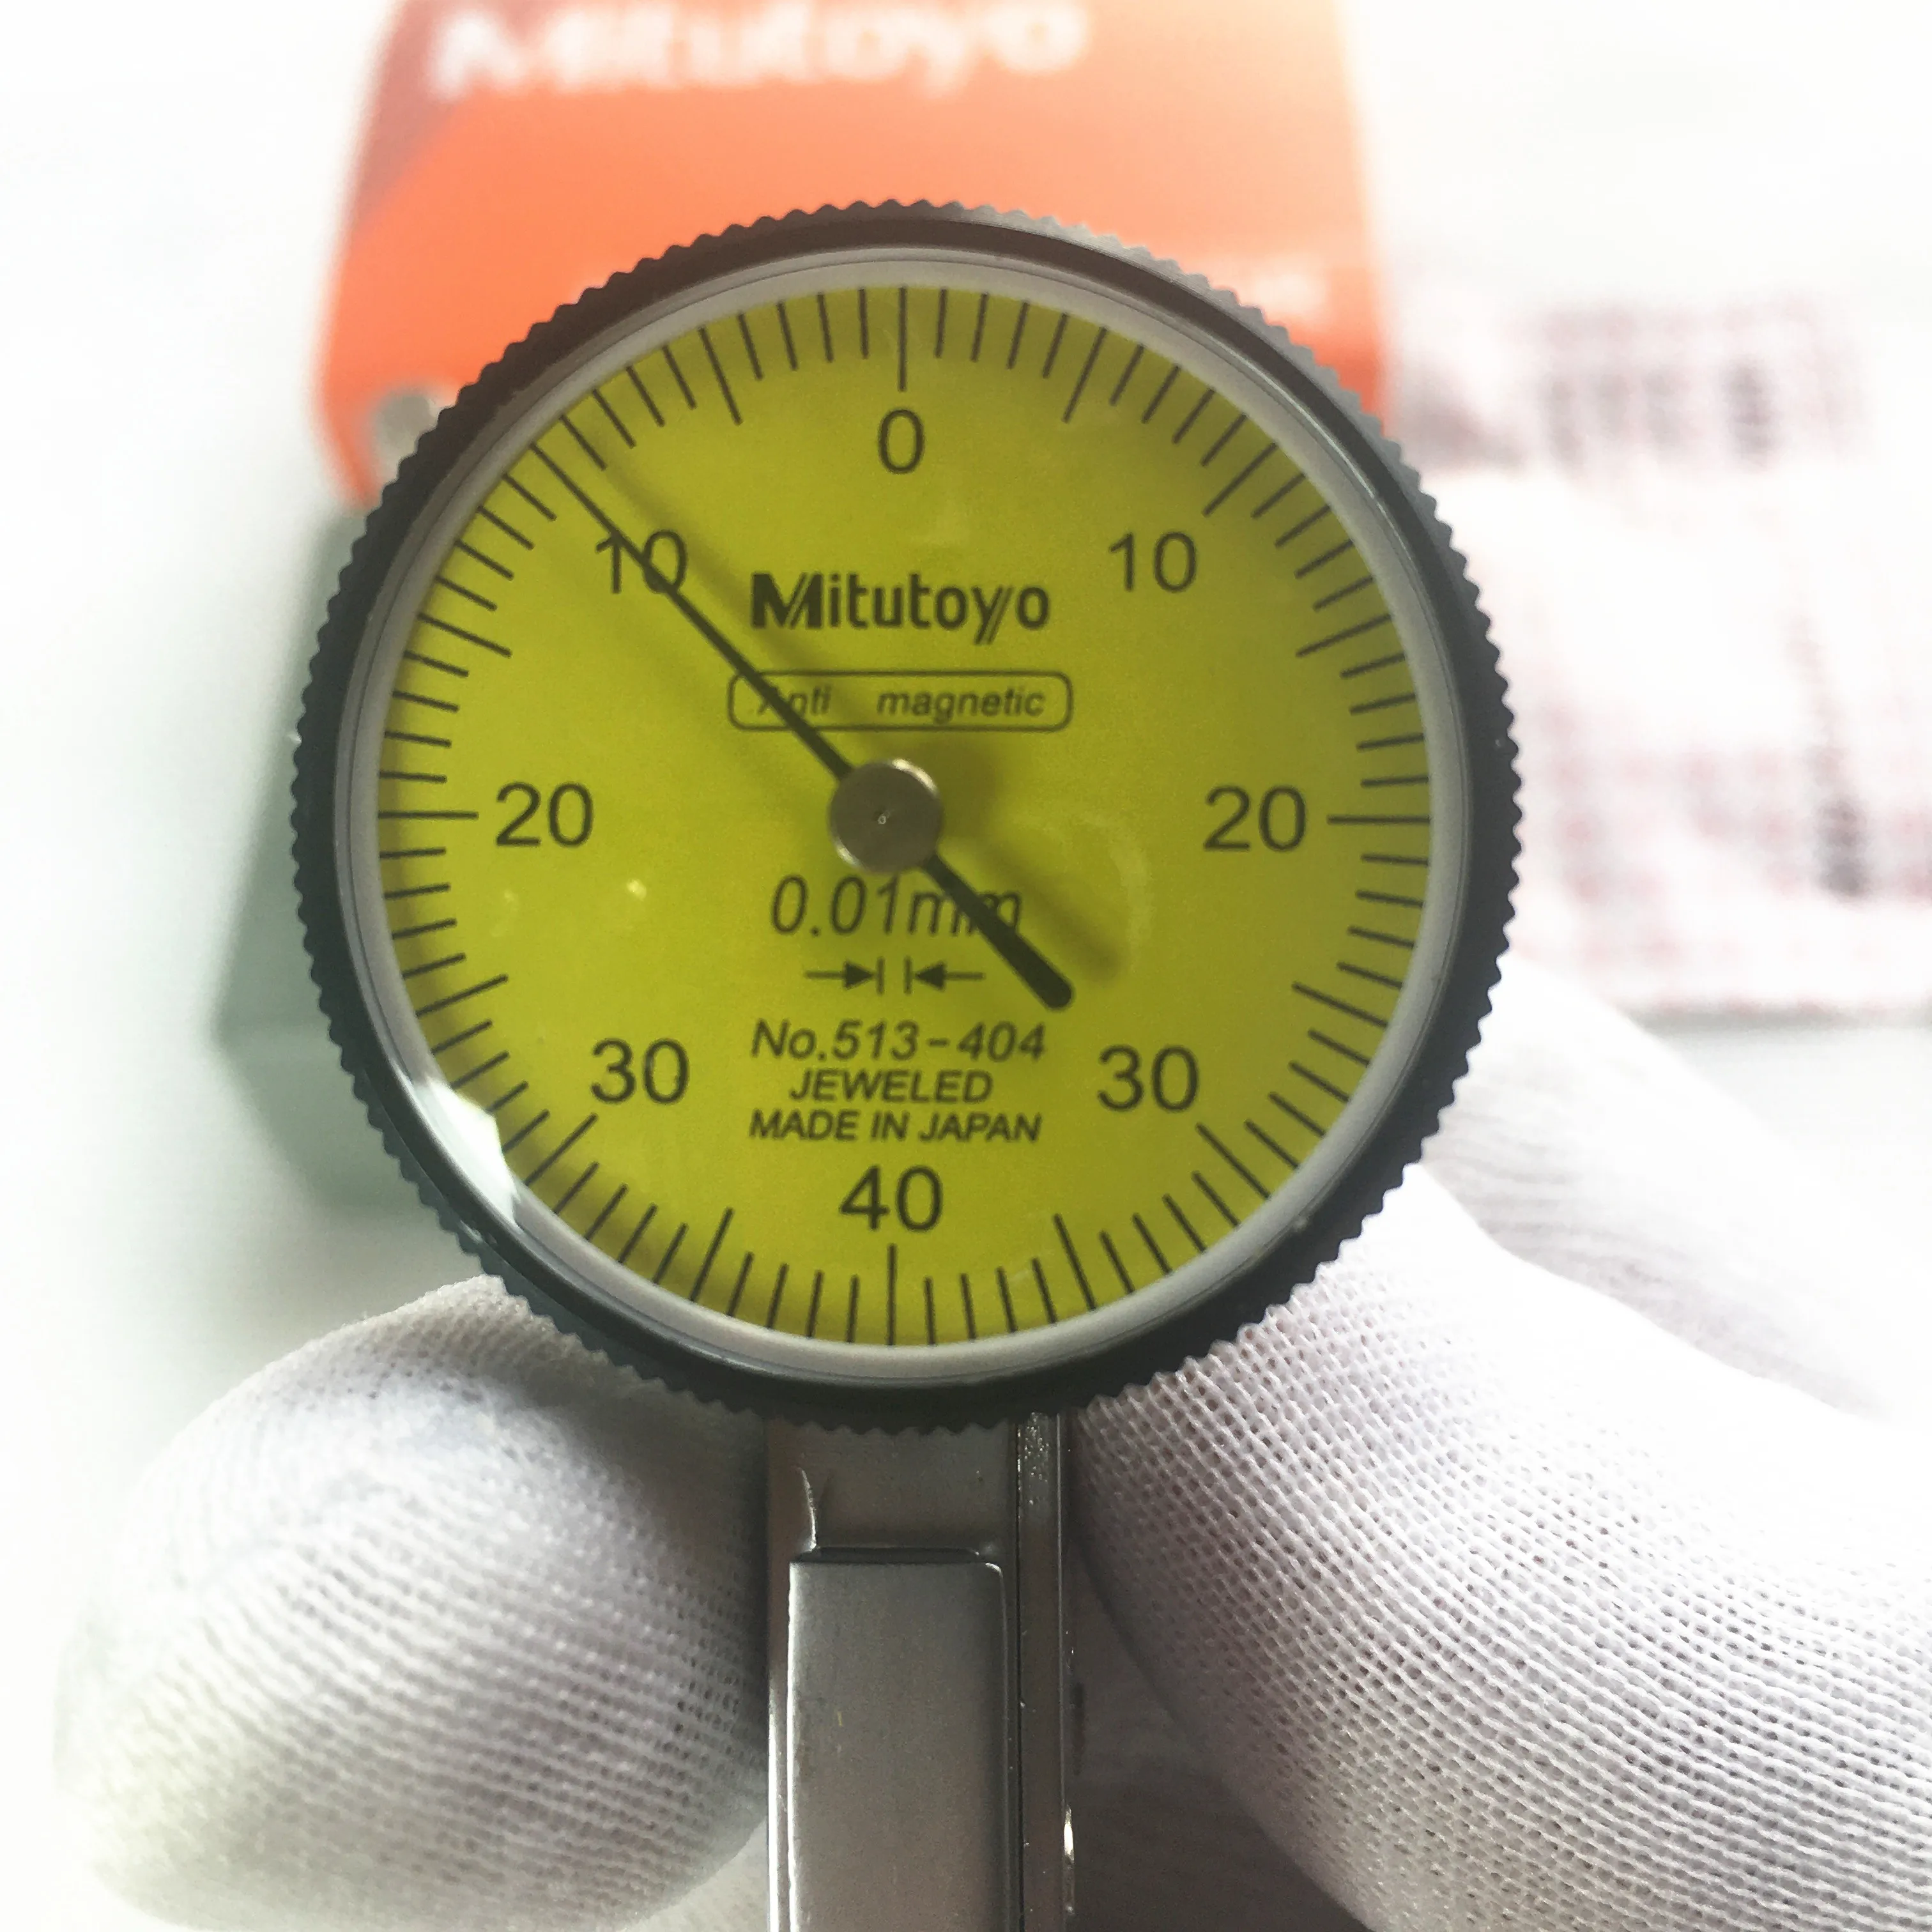 

Абсолютный циферблатный индикатор aomitutoyo № 404-0,01, аналоговый циферблат, точность циферблата 0,8 мм, диапазон 0-мм, диаметр измерения 02